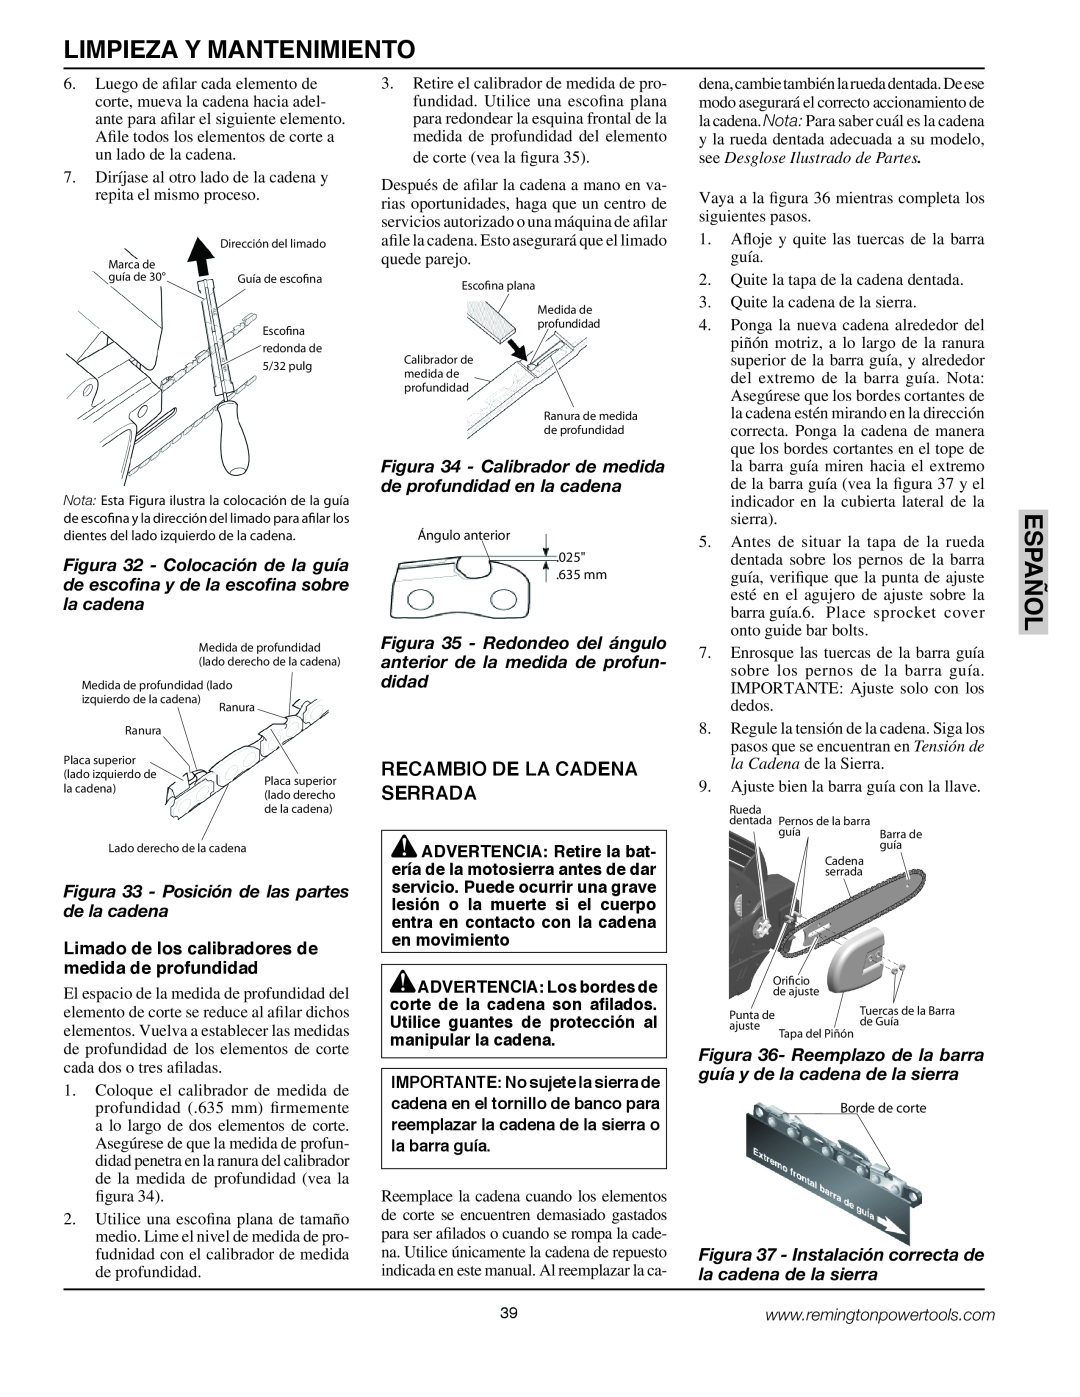 Remington BS188A, BPS188A owner manual Limpieza Y Mantenimiento, Español, Recambio De La Cadena Serrada 